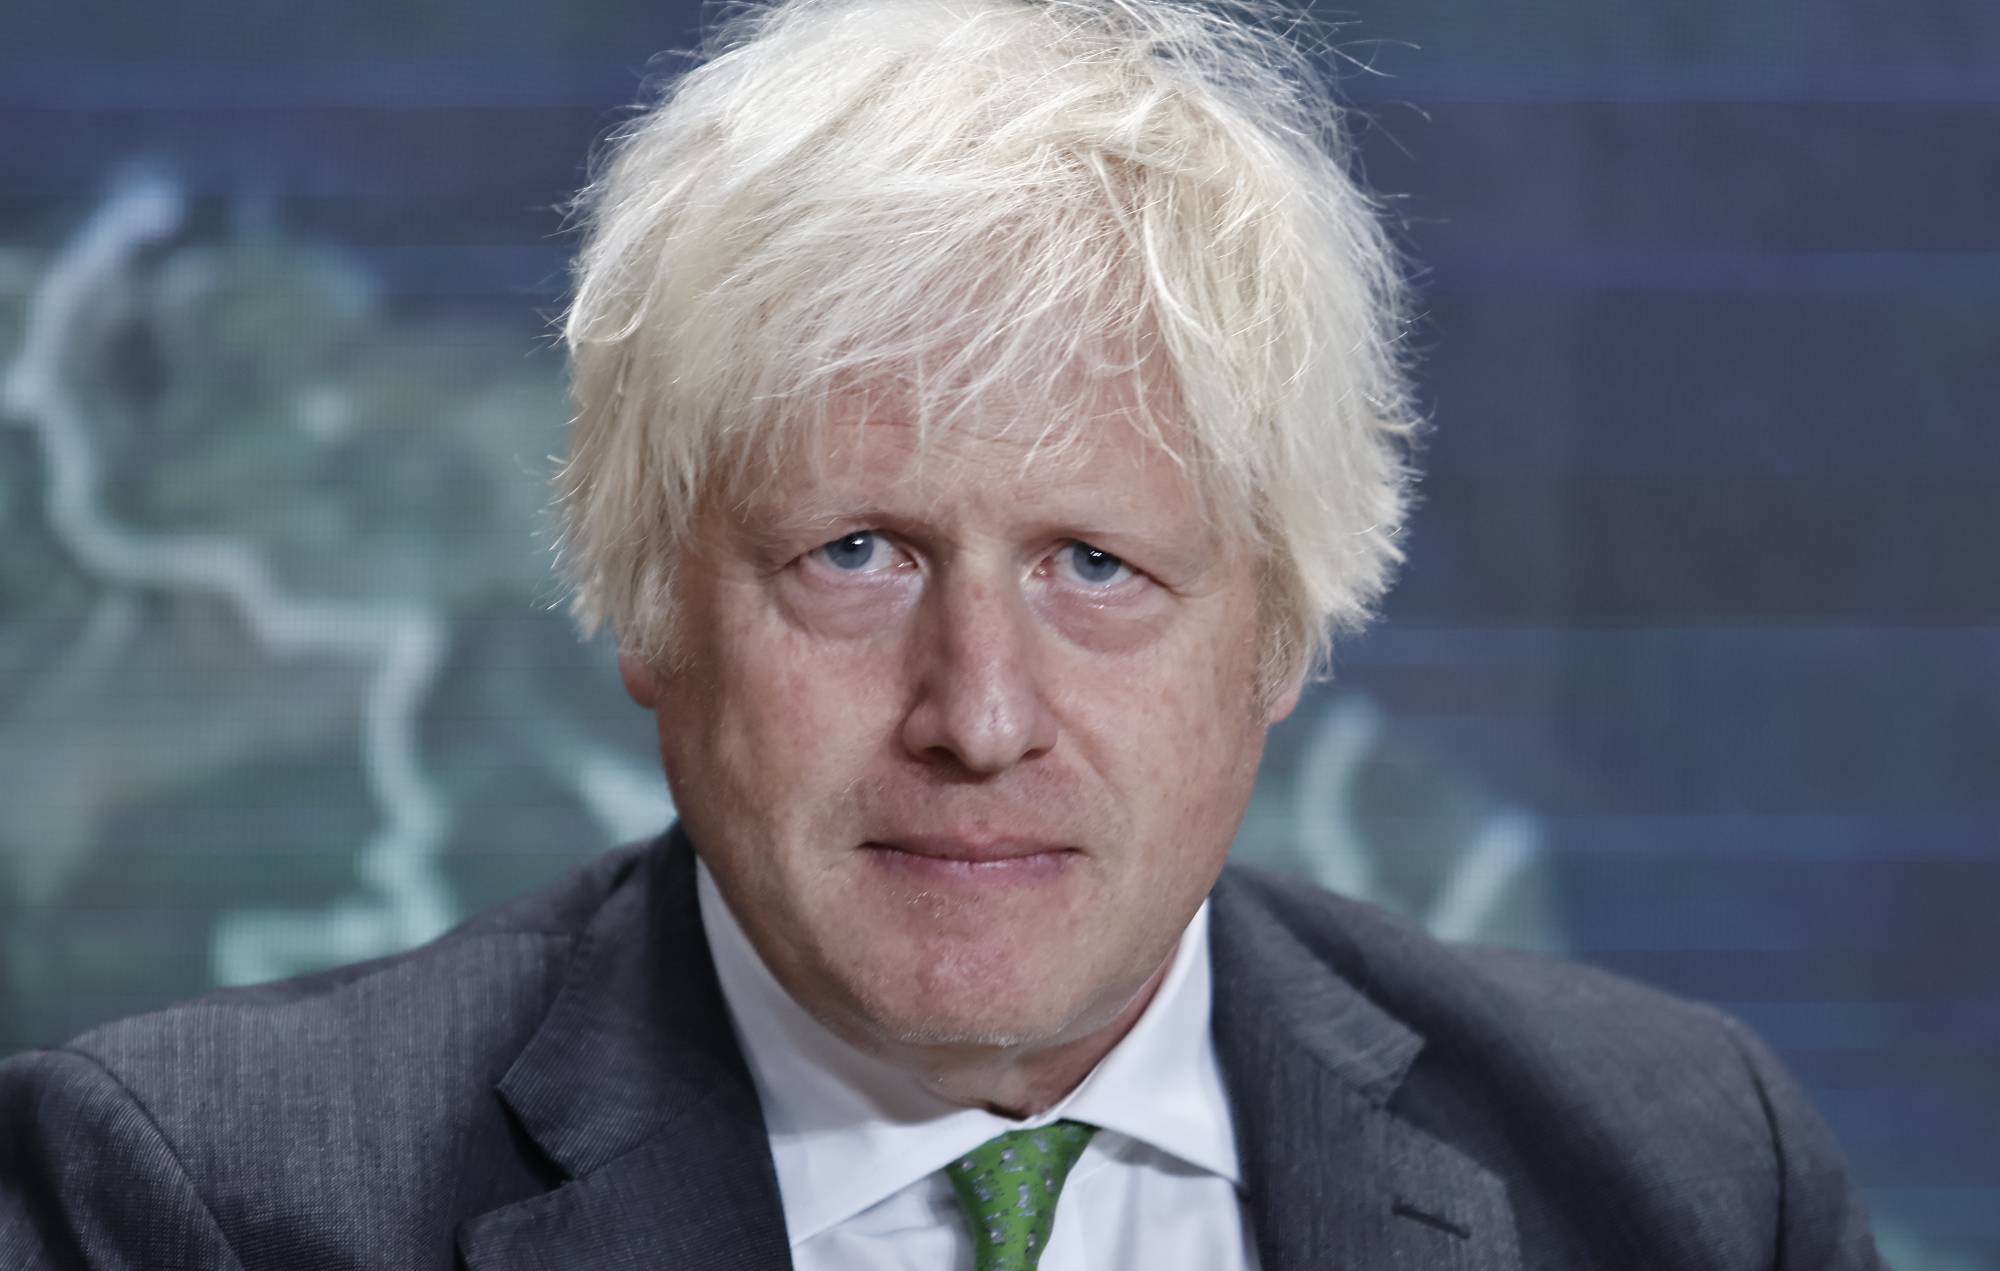 Boris Johnson to join ‘GB News’ as a presenter